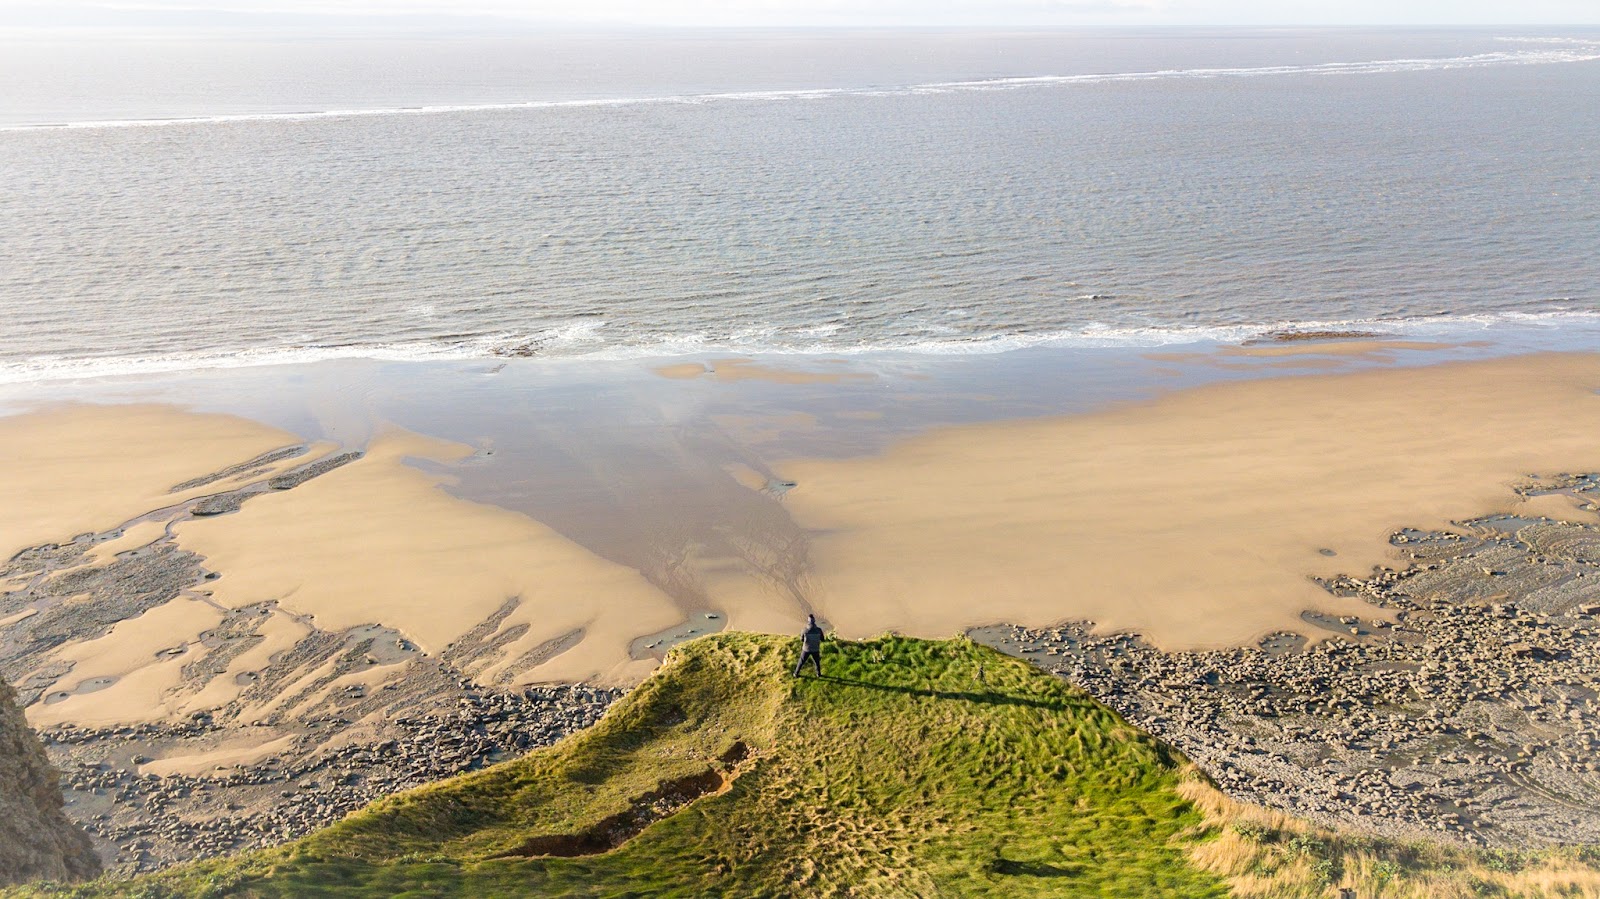 Zdjęcie Plaża Monknash - popularne miejsce wśród znawców relaksu